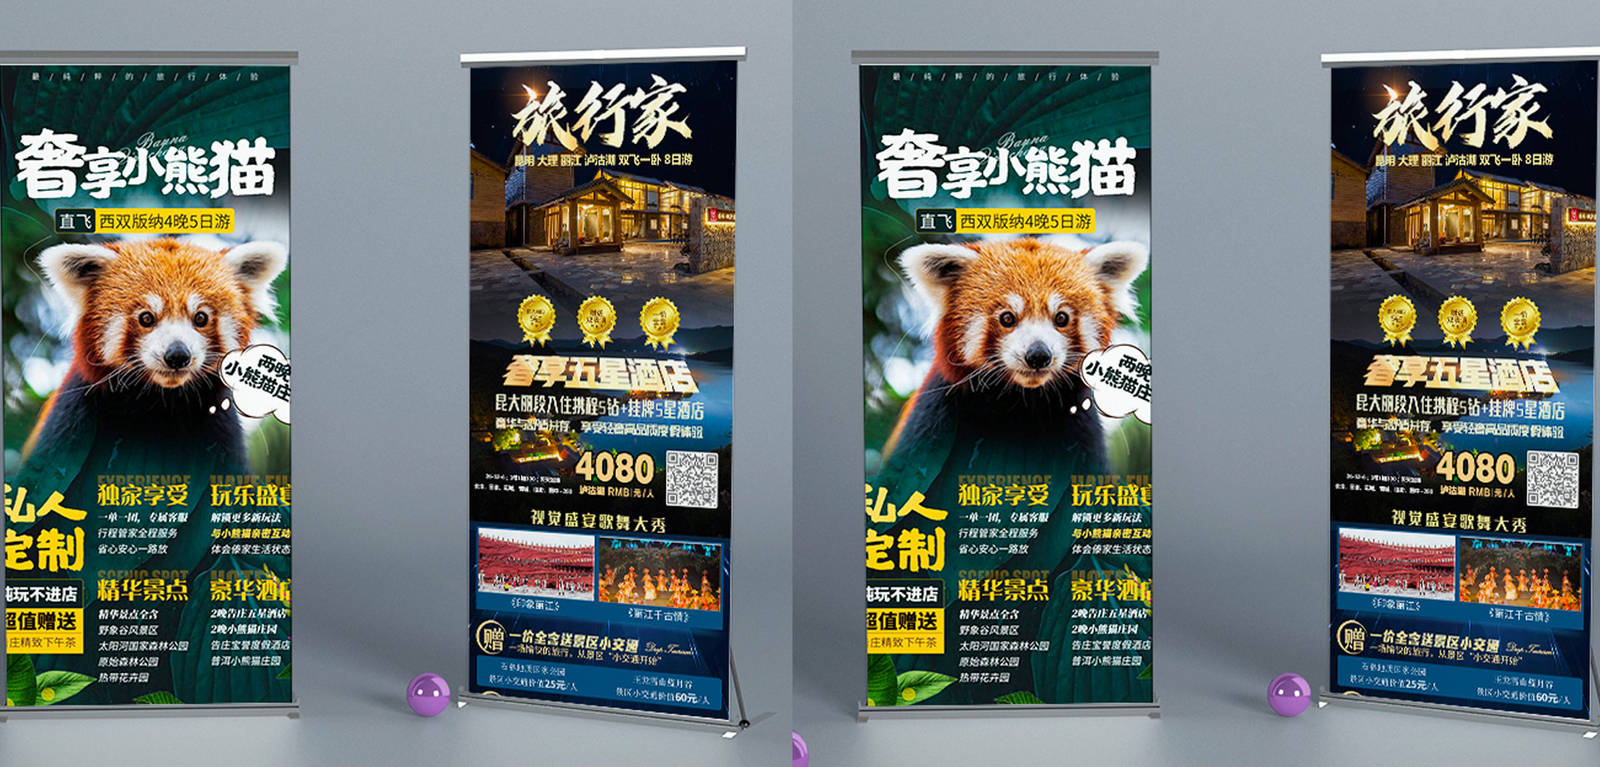 休闲旅游系列品牌宣传海报